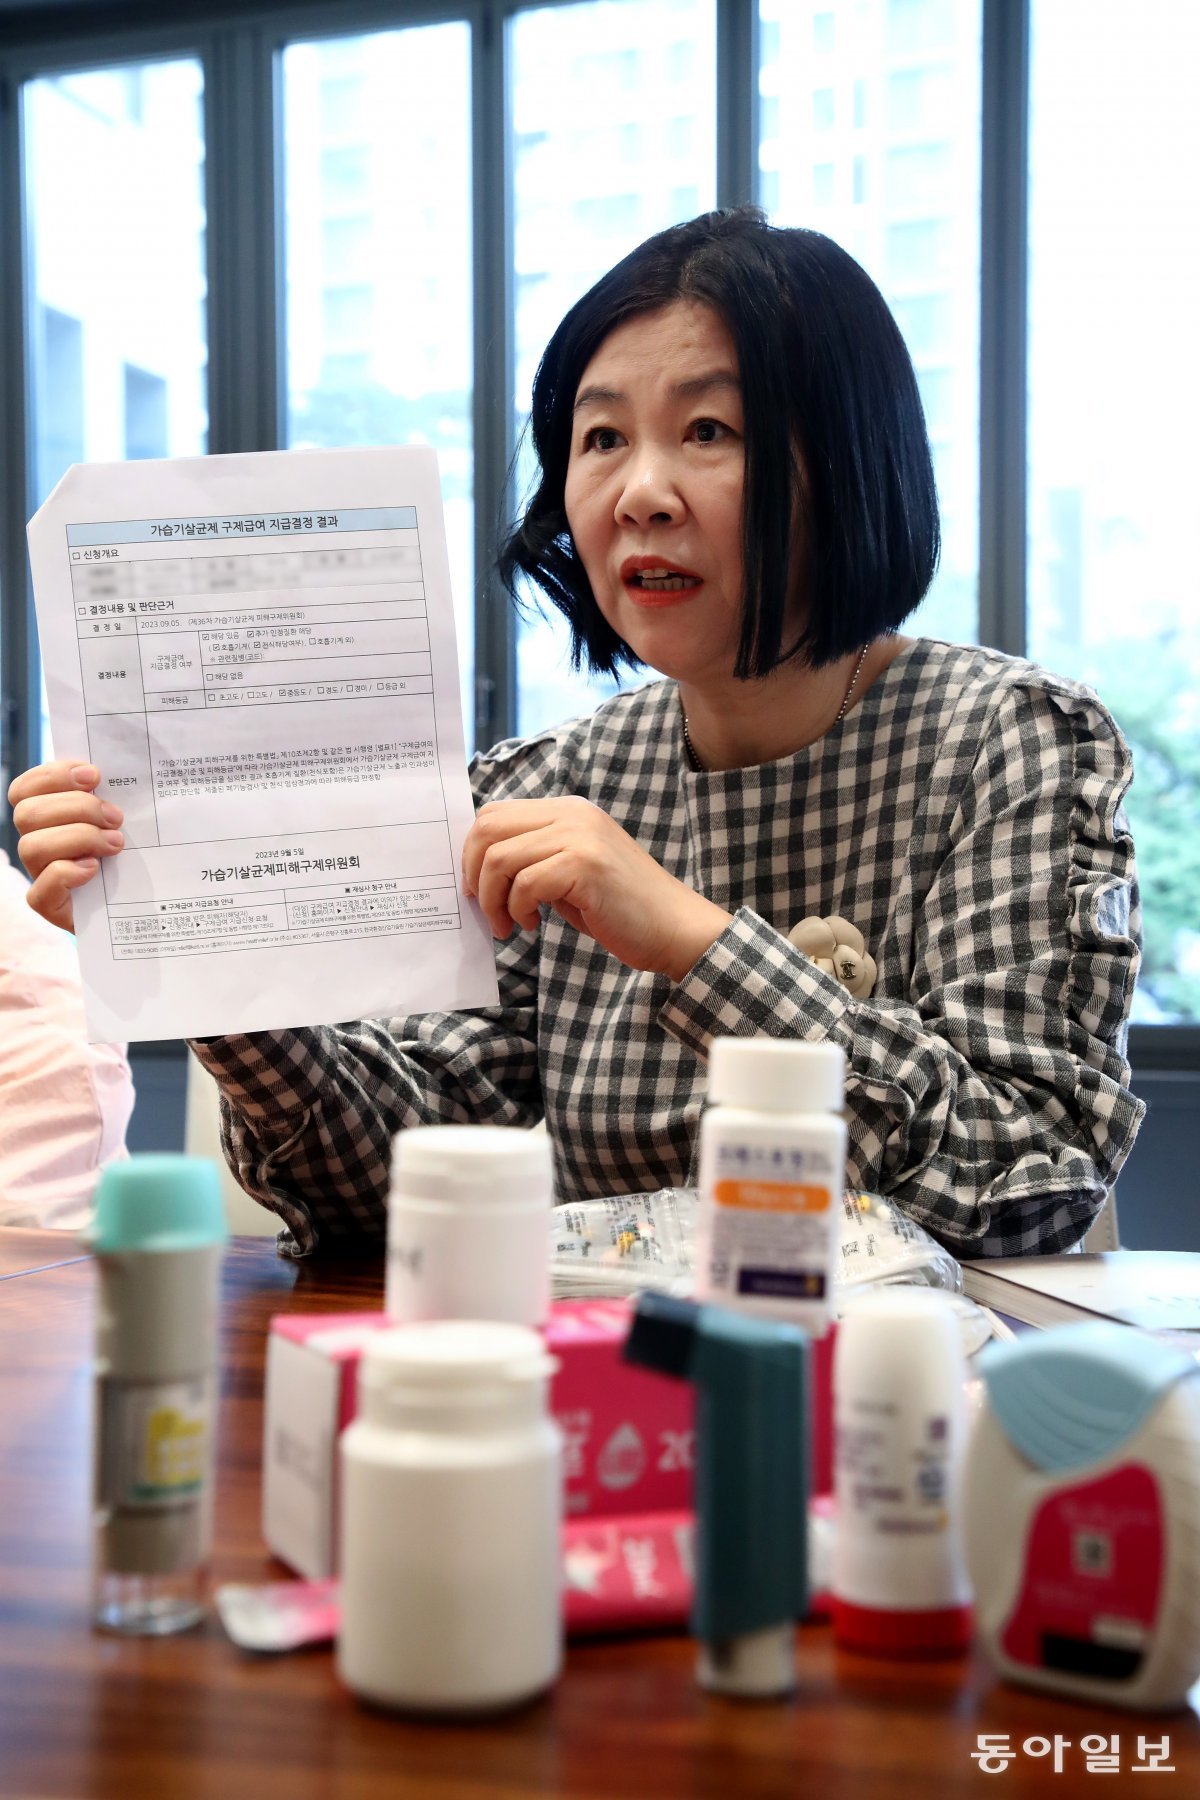 1994년부터 가습기 살균제를 사용하다가 다섯 아이를 잃은 민수연 씨가 7일 서울 서초구의 한 카페에서 지난해 9월 환경부에서 받은 피해등급 인정 서류를 들어 보이고 있다. 전영한 기자 scoopjyh@donga.com